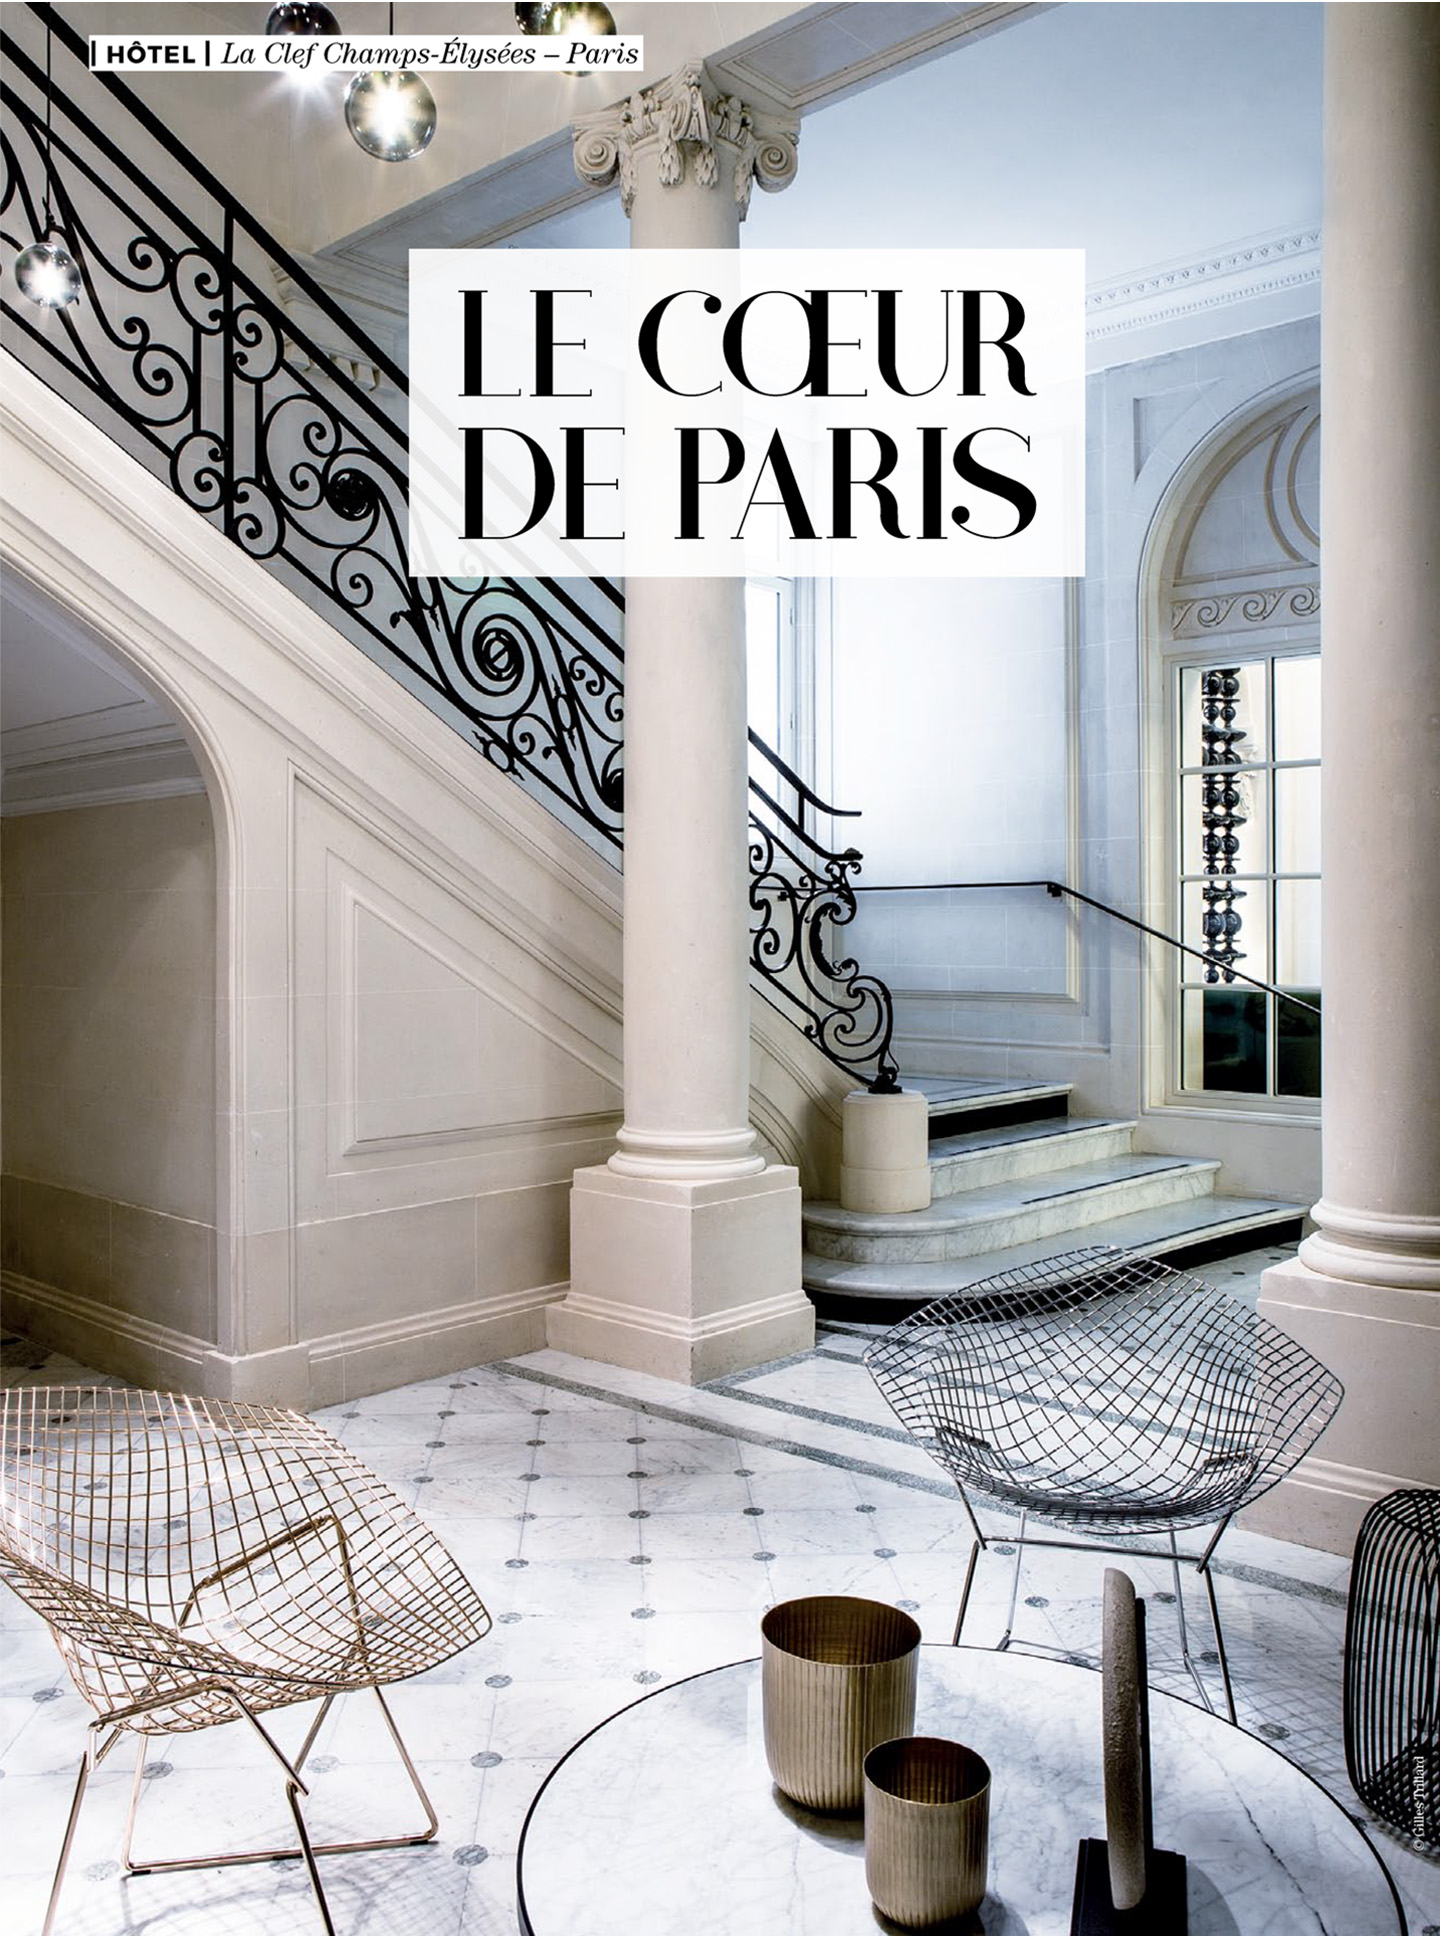 article sur l'hôtel parisien 5 étoiles La clef champs-elysées paris réalisé par le studio d'architecture d'intérieur jean-philippe nuel